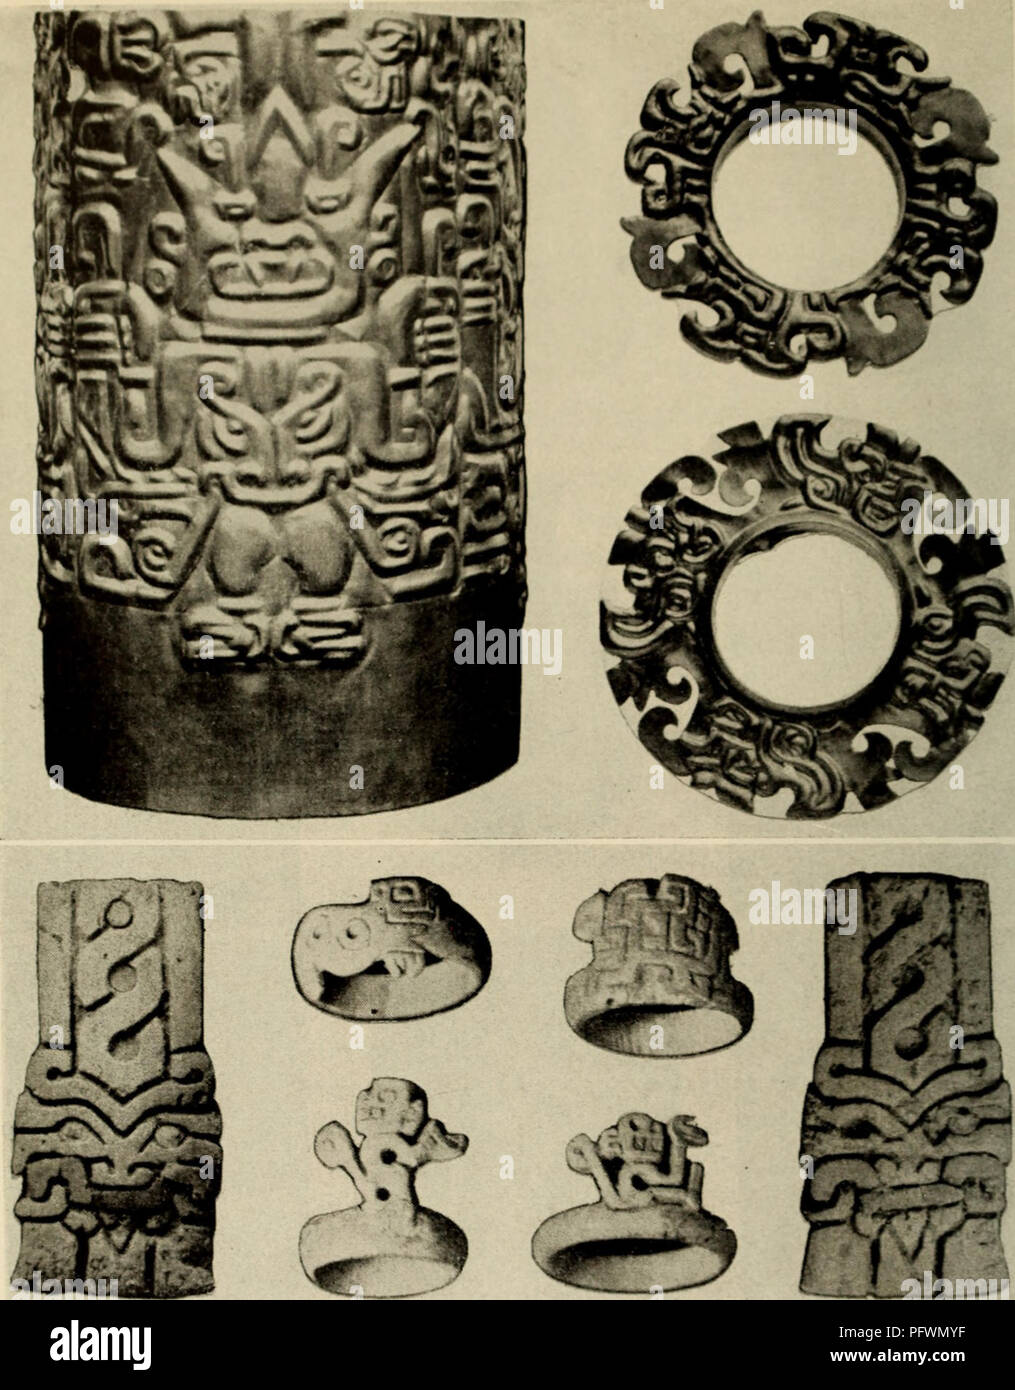 . Andine Kultur geschichte. Inkas; Indianer Südamerikas. Abb. 24. Kultisten Zeitraum 375/000 von chongoyape und Hou ^..;;;;;;;;;..&lt; ich.. :::: Ich Chicama. Conrirsy von Museum der Amerikanischen Indianer, Hcye Stiftung; Knochen, mit freundlicher Genehmigung von Hafael Larco Hoyle. 128. Bitte beachten Sie, dass diese Bilder sind von der gescannten Seite Bilder, die digital für die Lesbarkeit verbessert haben mögen - Färbung und Aussehen dieser Abbildungen können nicht perfekt dem Original ähneln. extrahiert. Bennett, Wendell Clark, 1905-1953; Vogel, Junius Bouton, 1907-1982. New York [American Museum of Natural History] Stockfoto